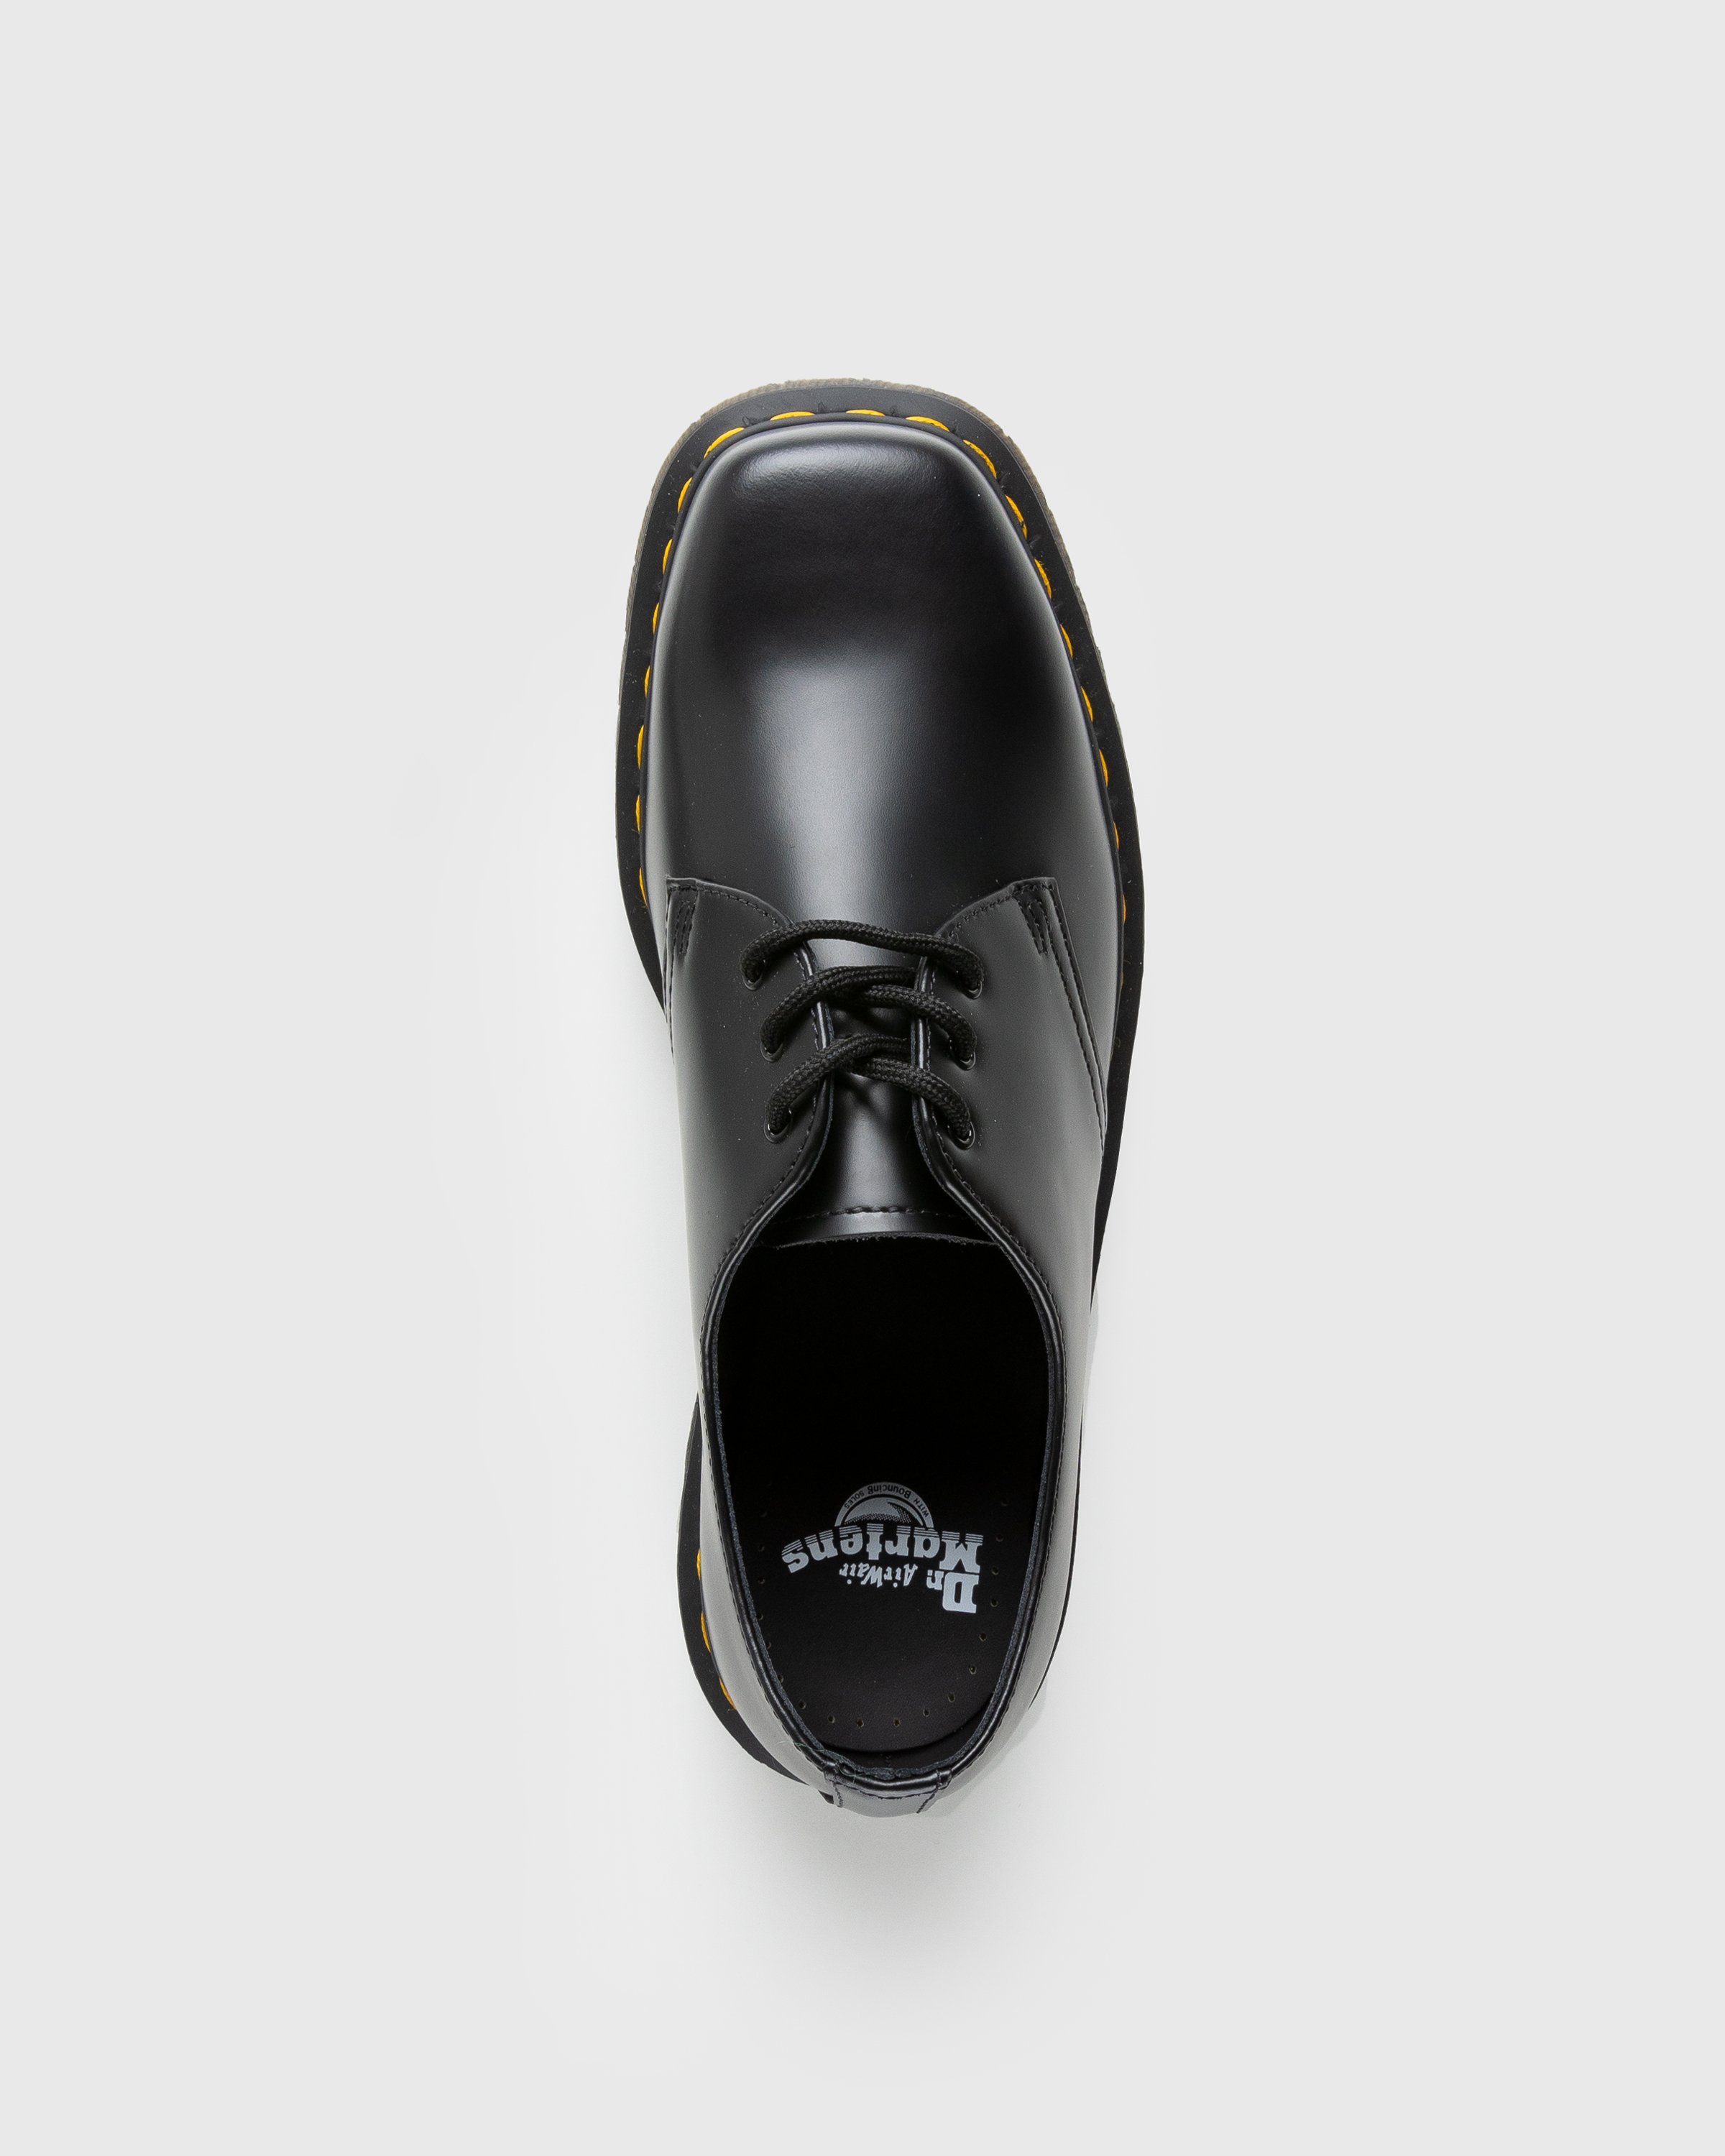 Dr. Martens - 1461 Bex Squared Black Polished Smooth - Footwear - Black - Image 5